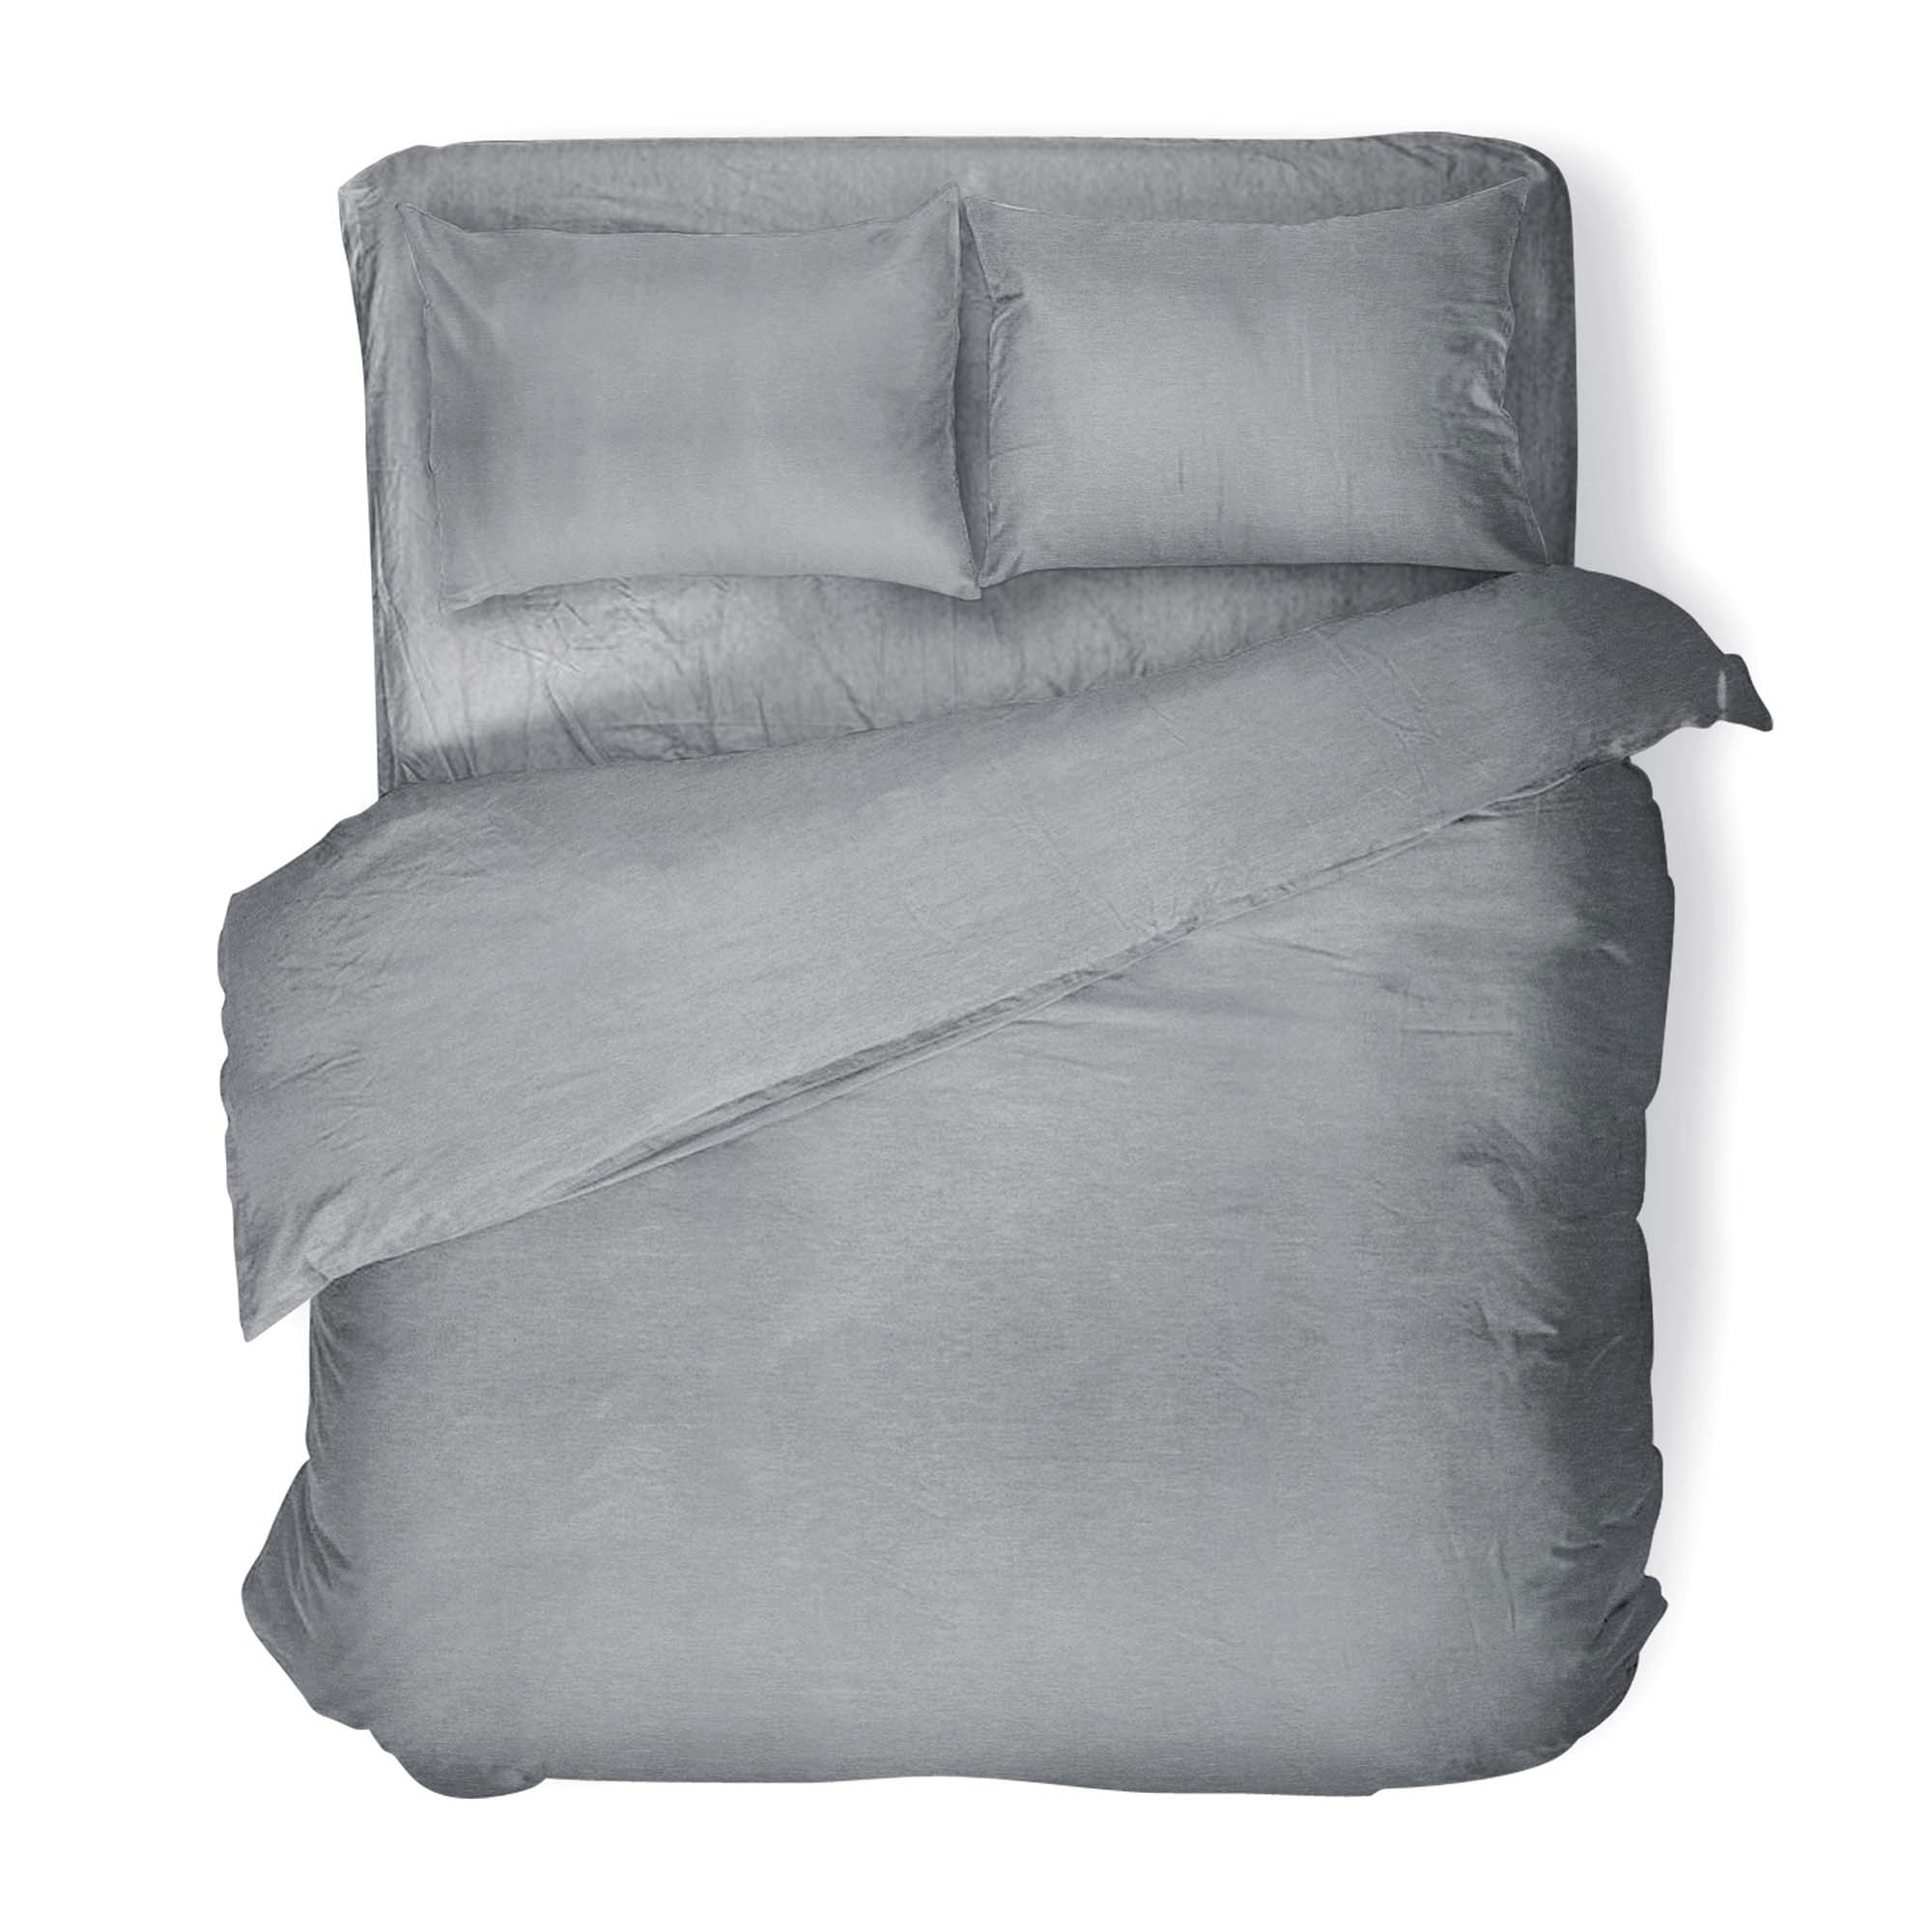 Комплект постельного белья Absolut 2СП Silver наволочки 50х70 меланж - фото 1